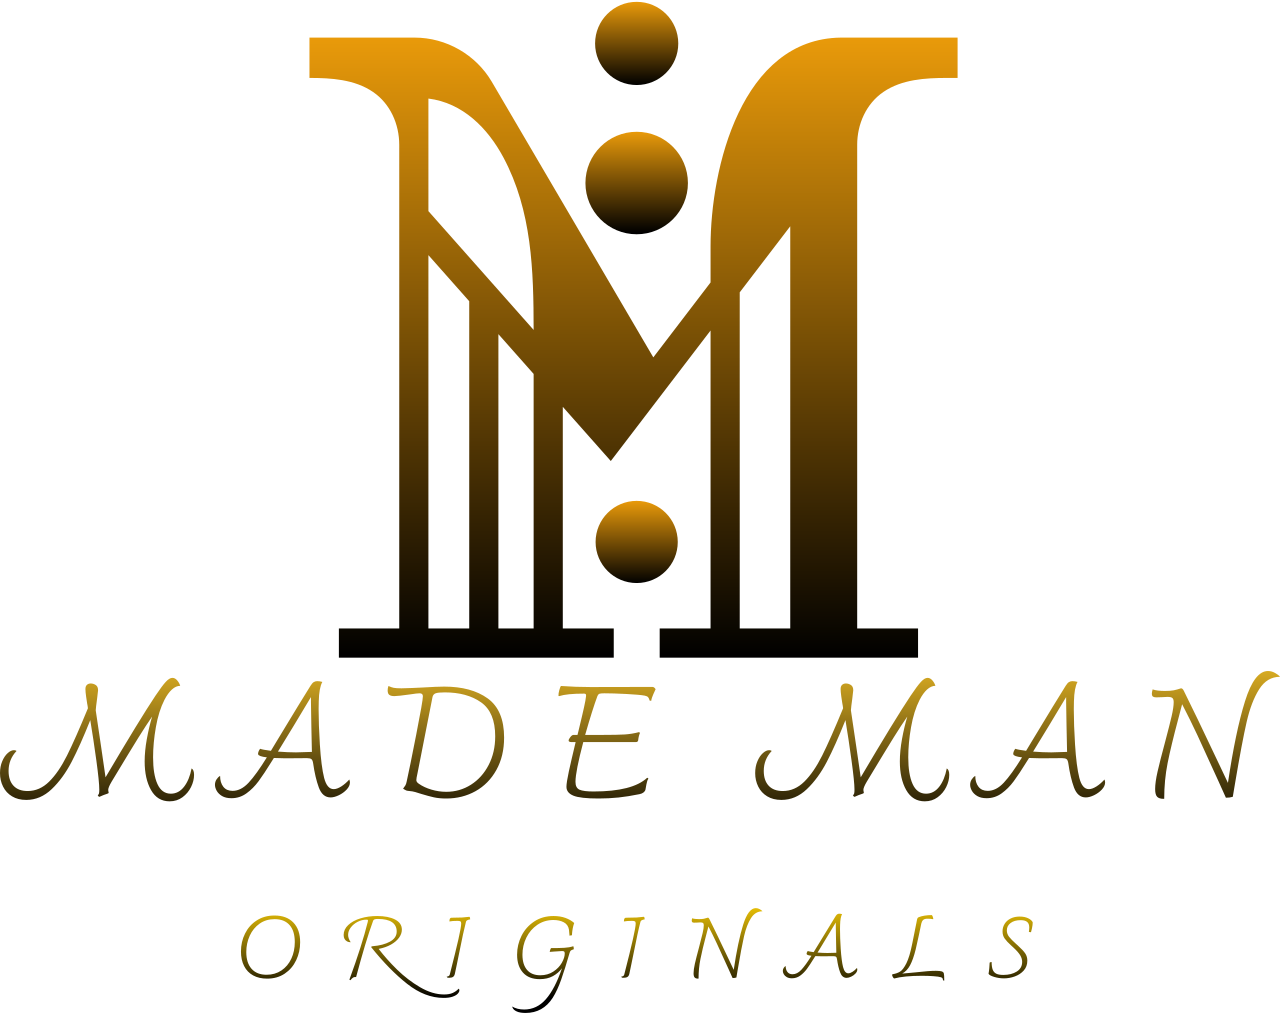 Made man's logo